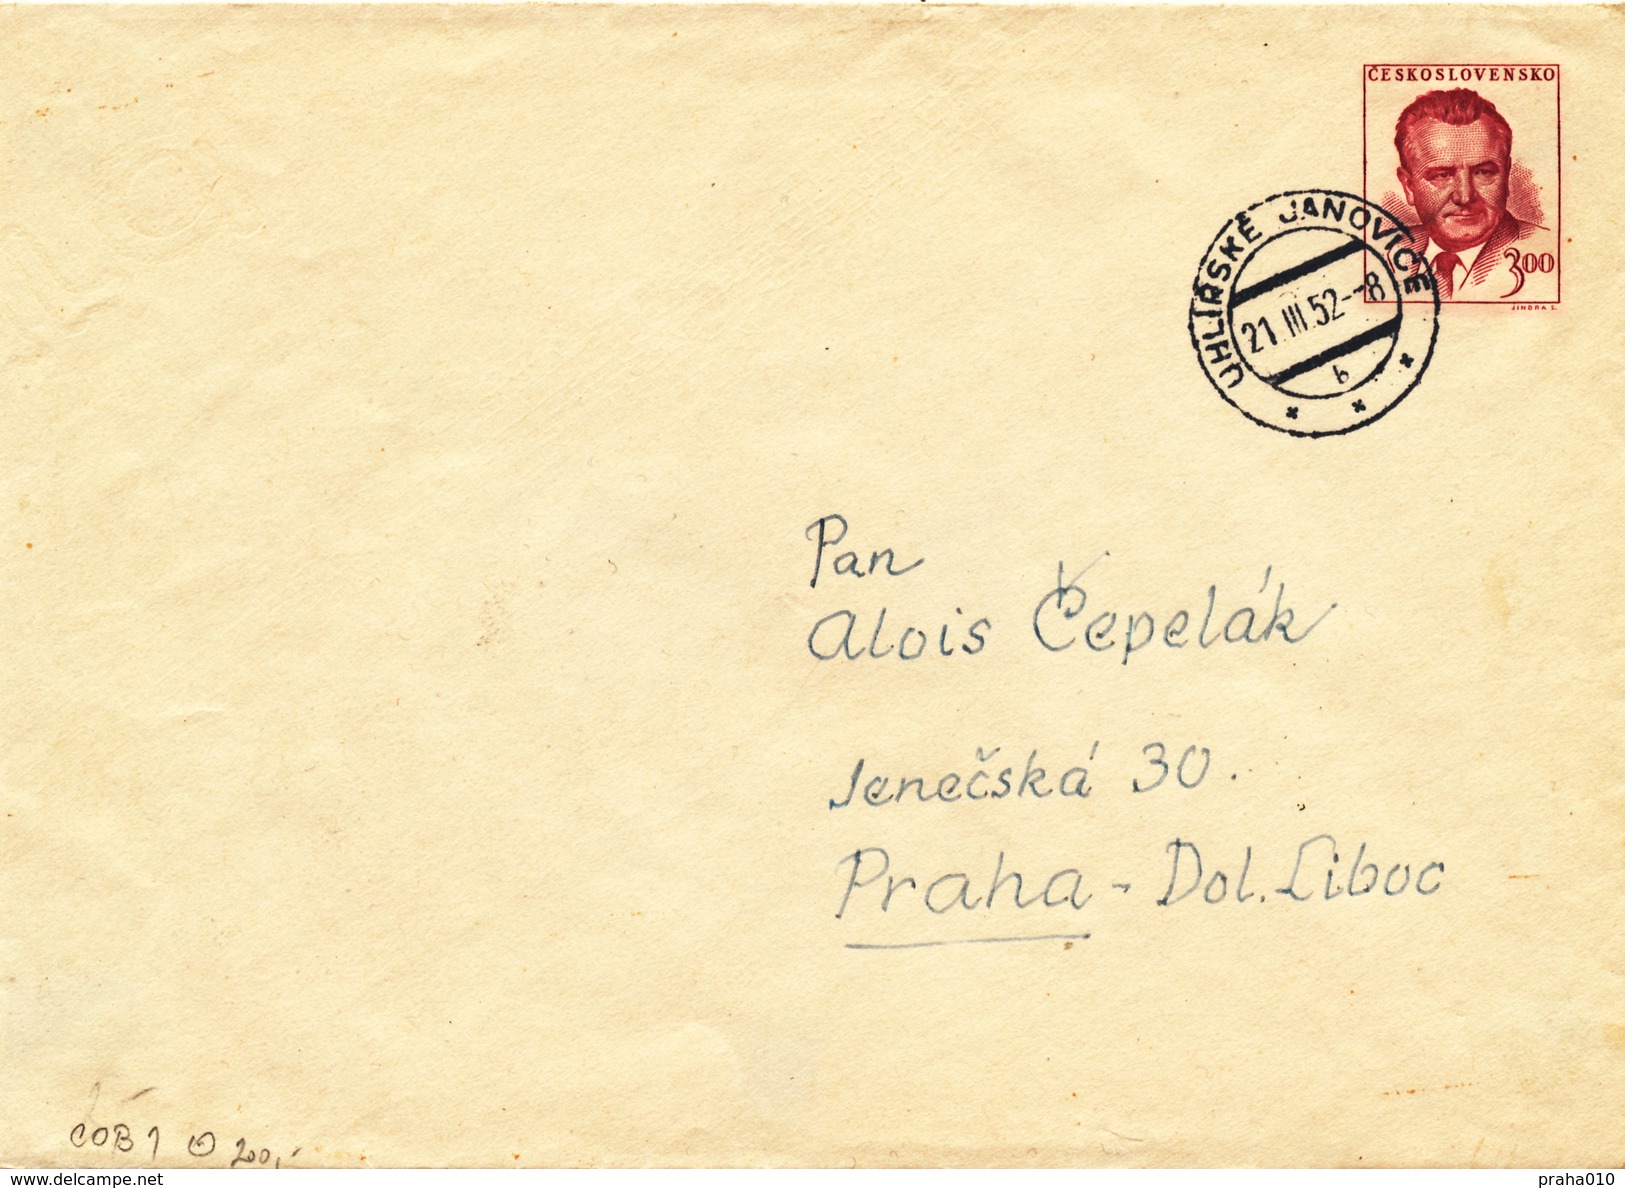 L3470 - Czechoslovakia (1952) Uhlirske Janovice (Postal Stationery: President Klement Gottwald (1896-1953)) - Covers